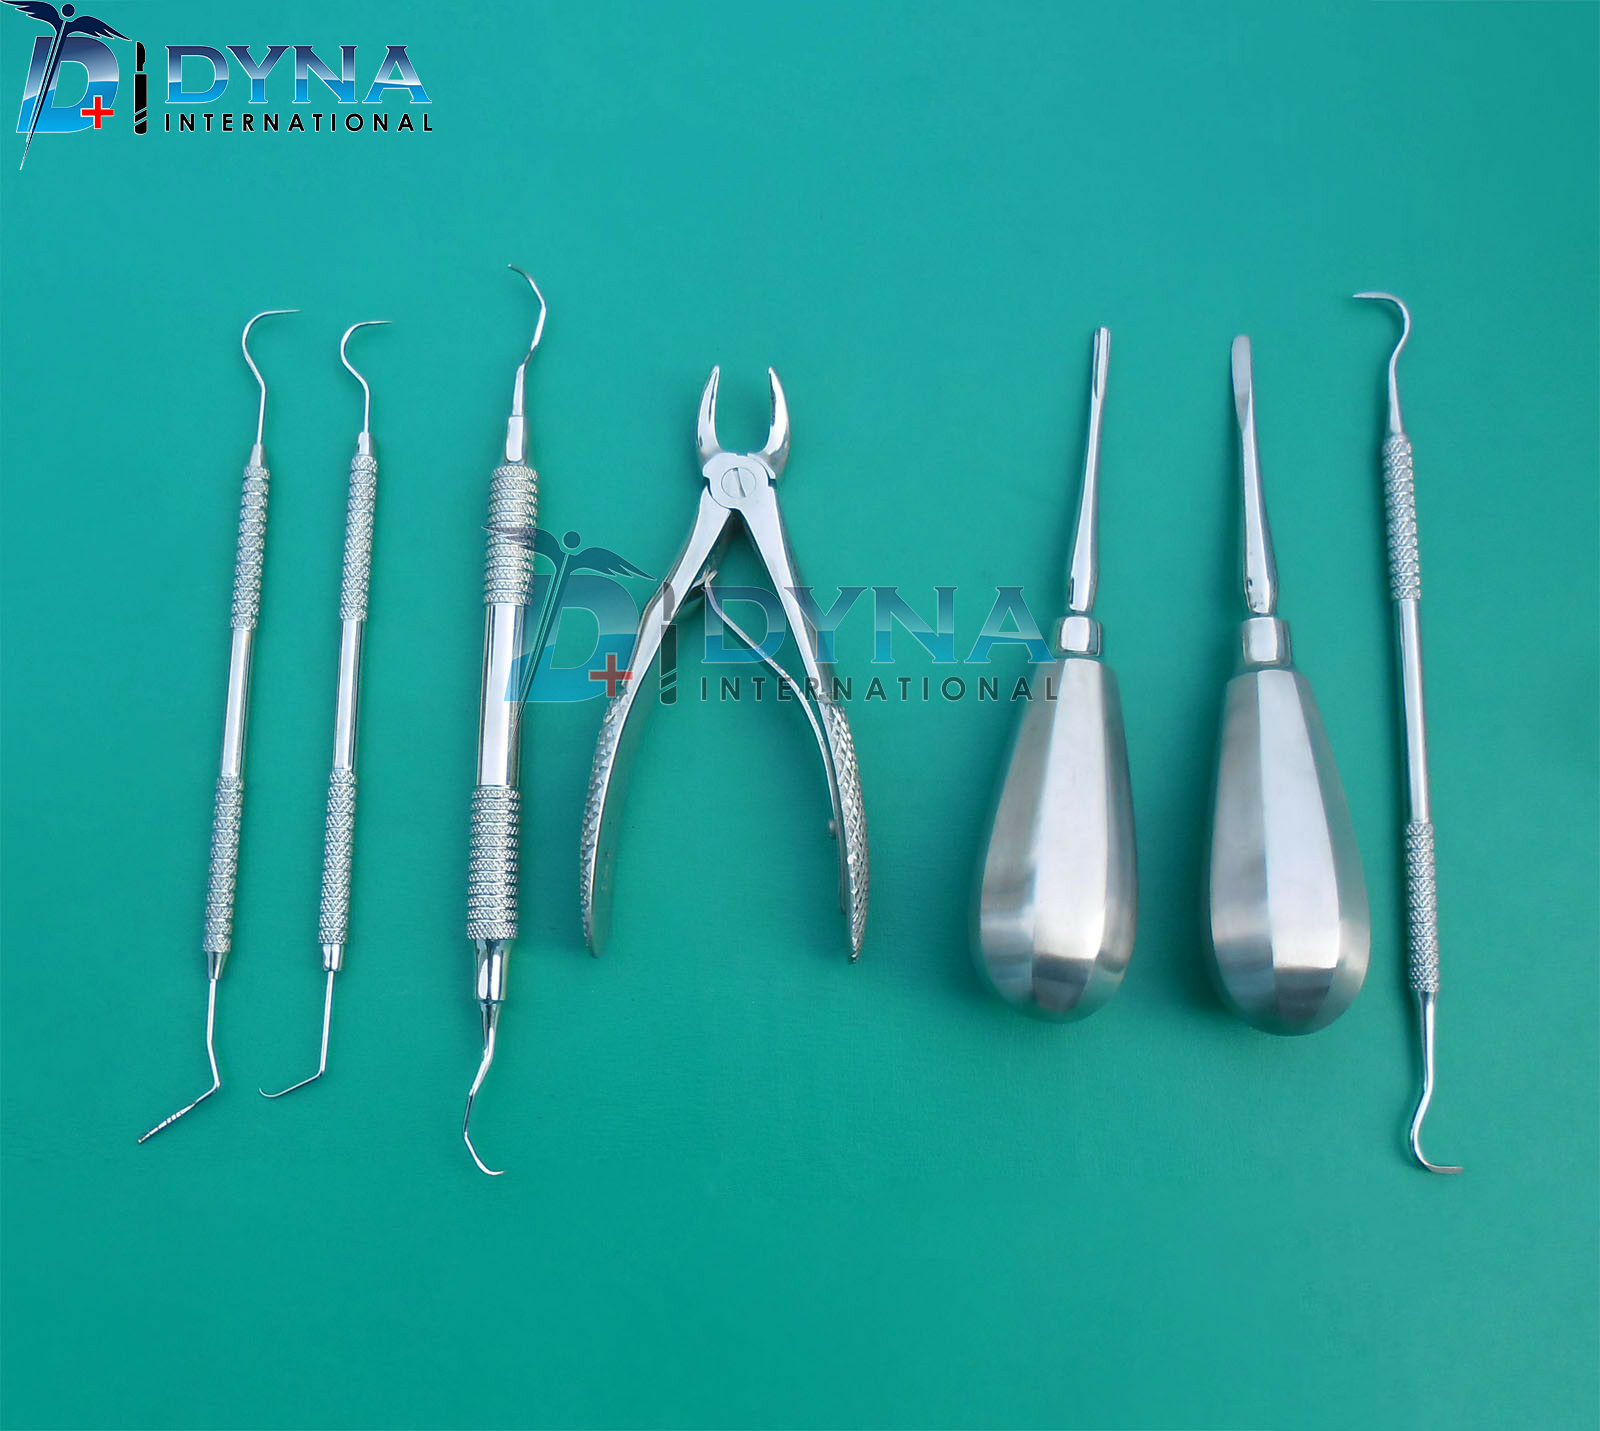 Small-Animal-Vet-dental-instruments-8-Piece-Specialized-Instrument-Set-1-intl.jpg